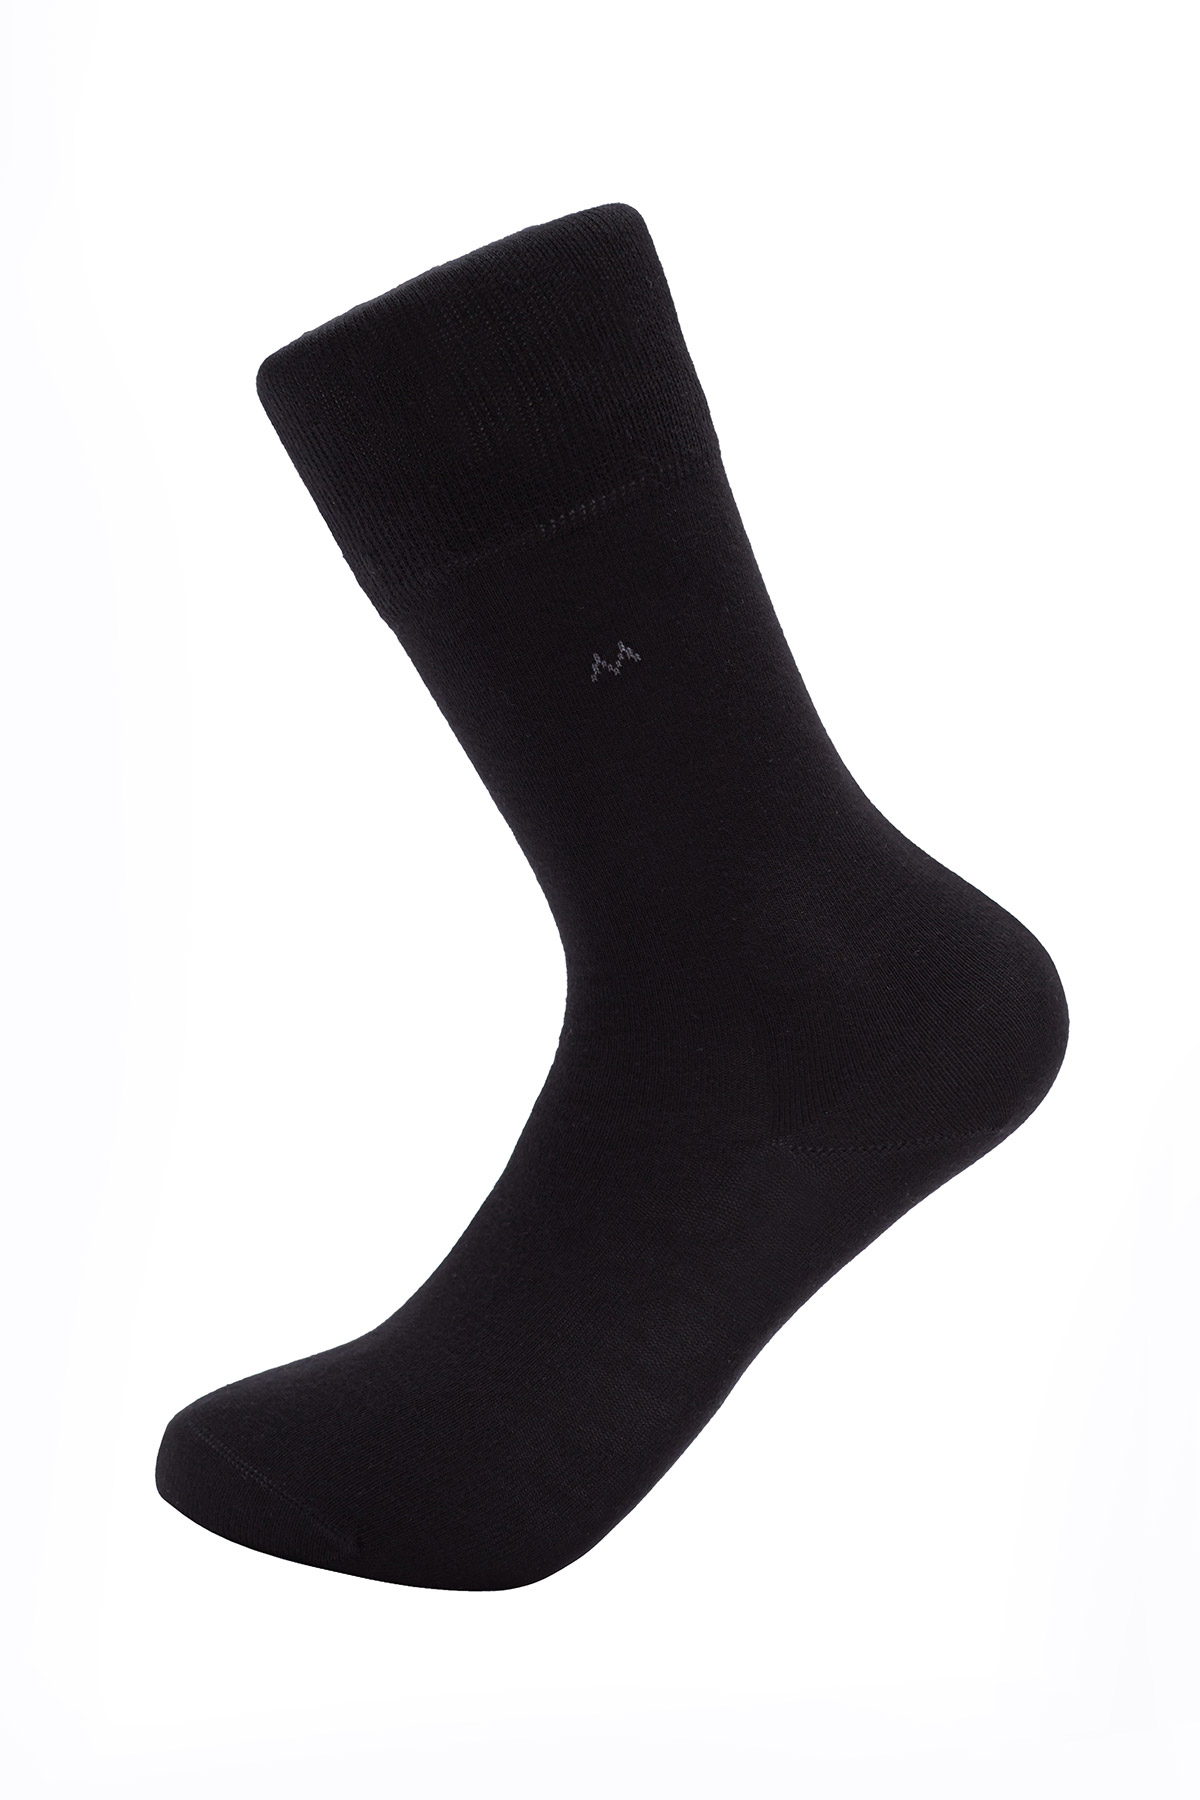 Pamuklu Siyah Üçlü Çorap Seti